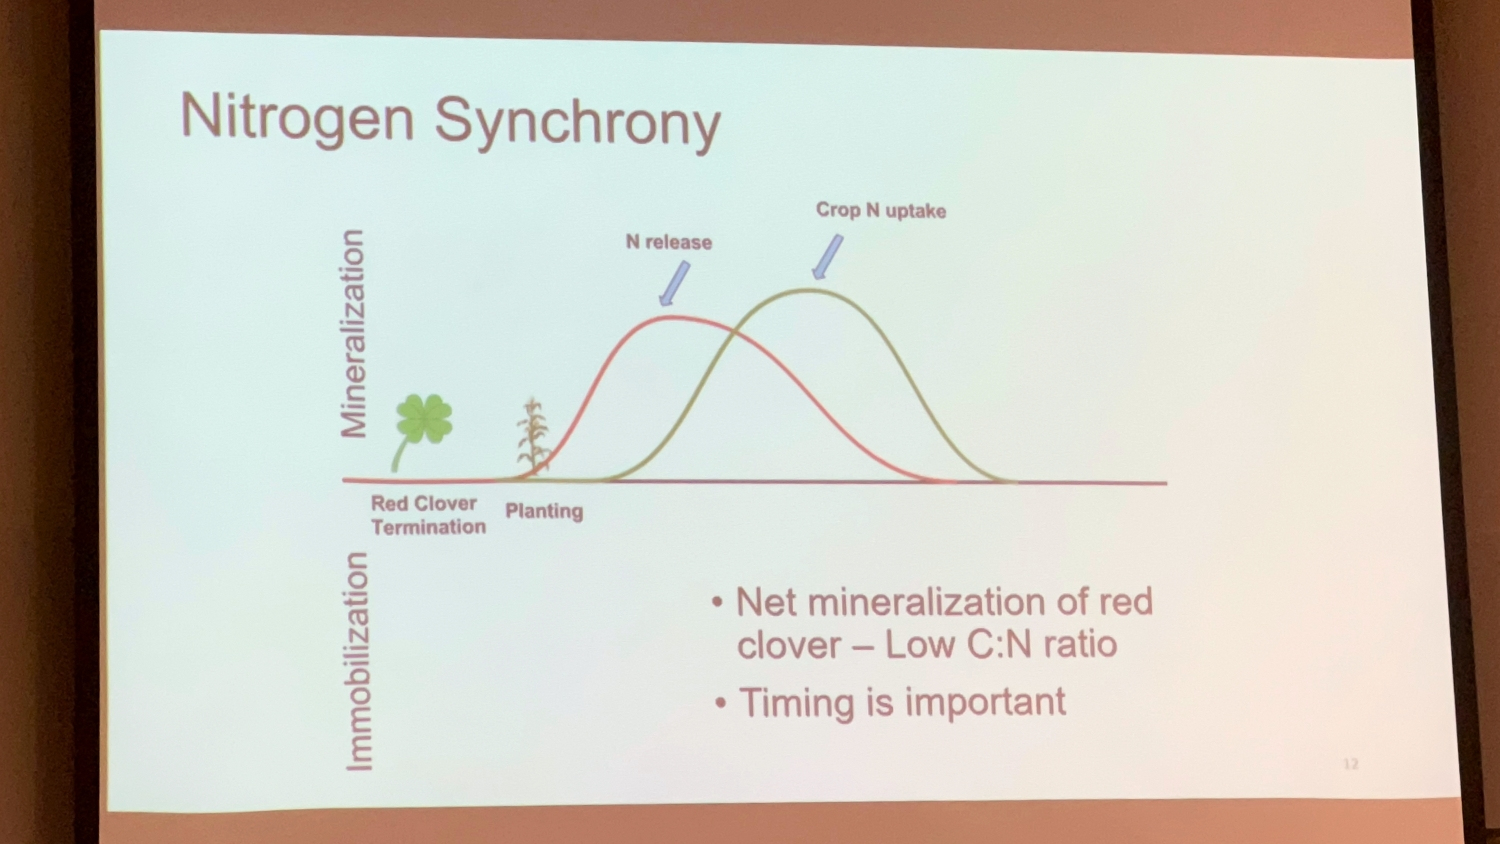 Nitrogen timing from cover crops presentation slide